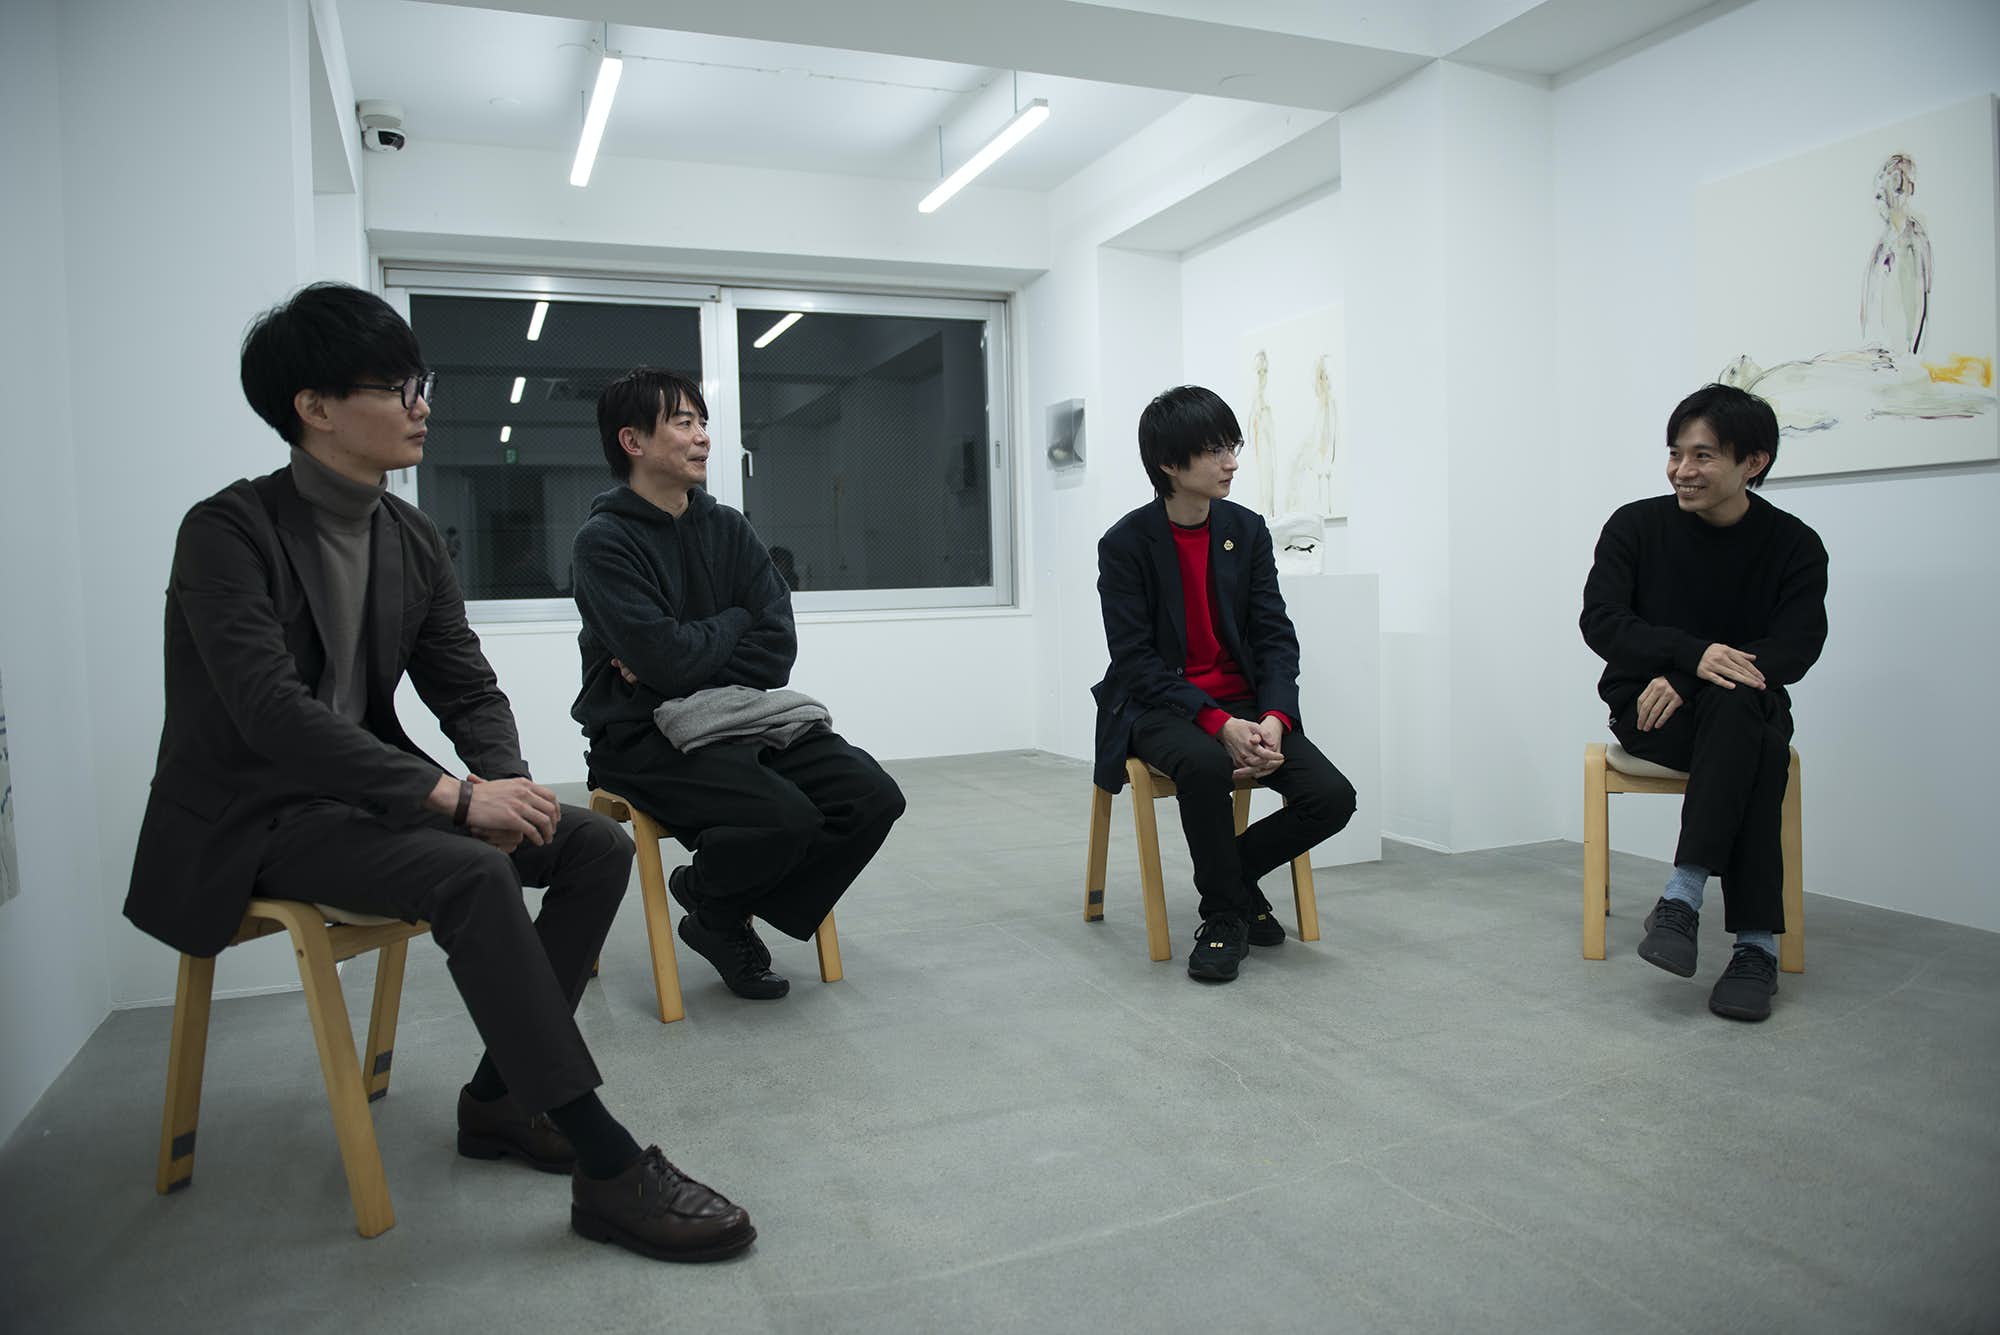 【メディア掲載】「日本画」と現代アートの隔たりはなぜ生まれたか。グループ展「re」 座談会